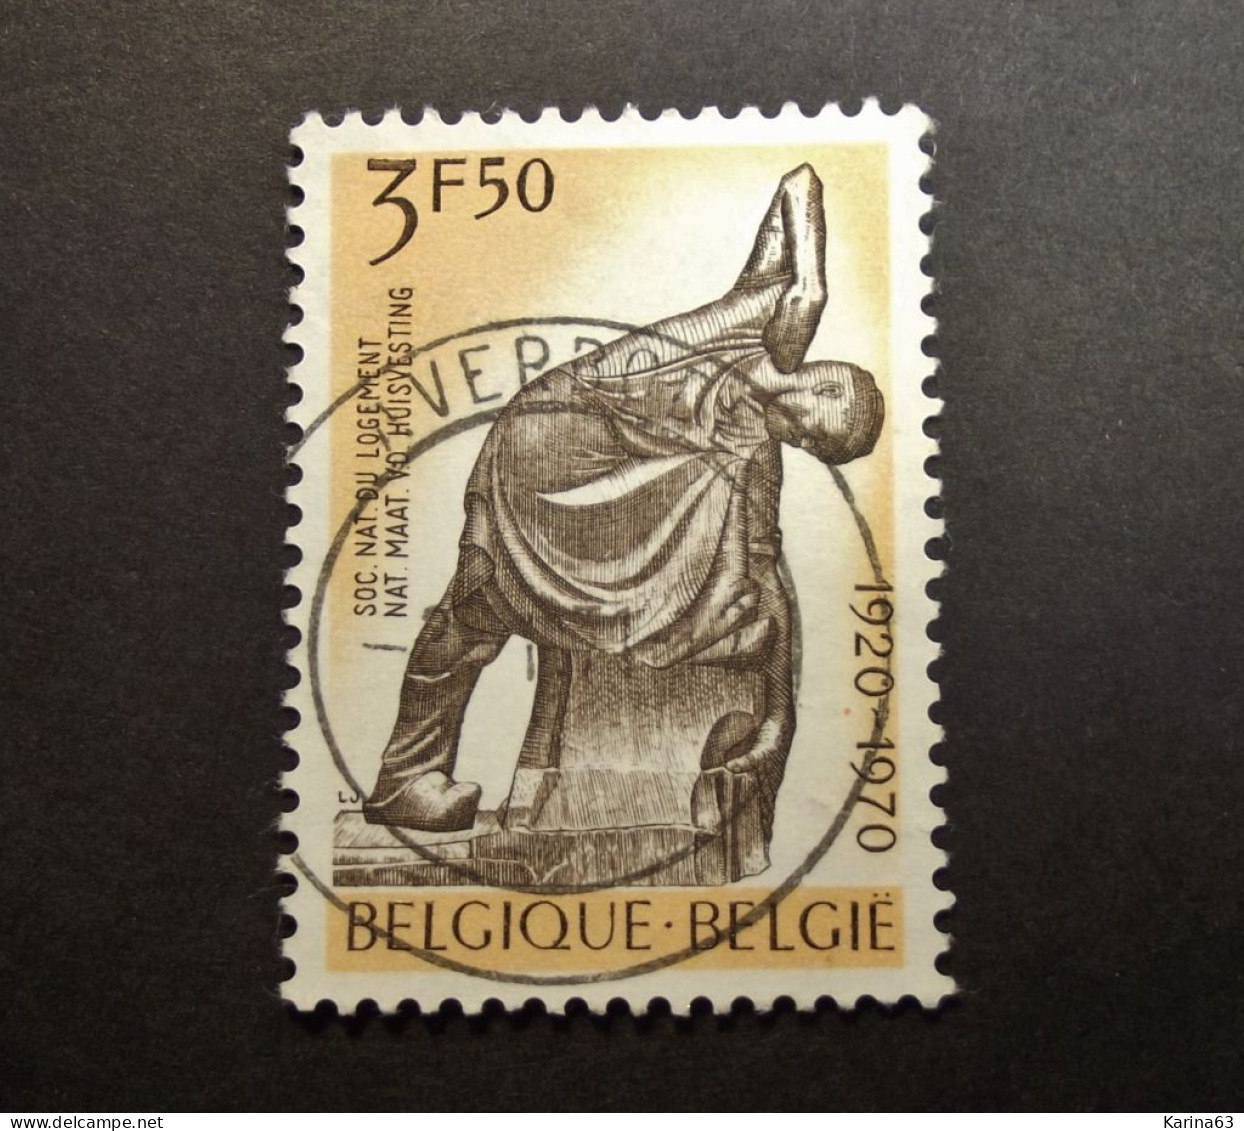 Belgie Belgique - 1970 -  OPB/COB  N° 1554 - 3.5 Fr  - Obl.  - AVERBODE - Used Stamps